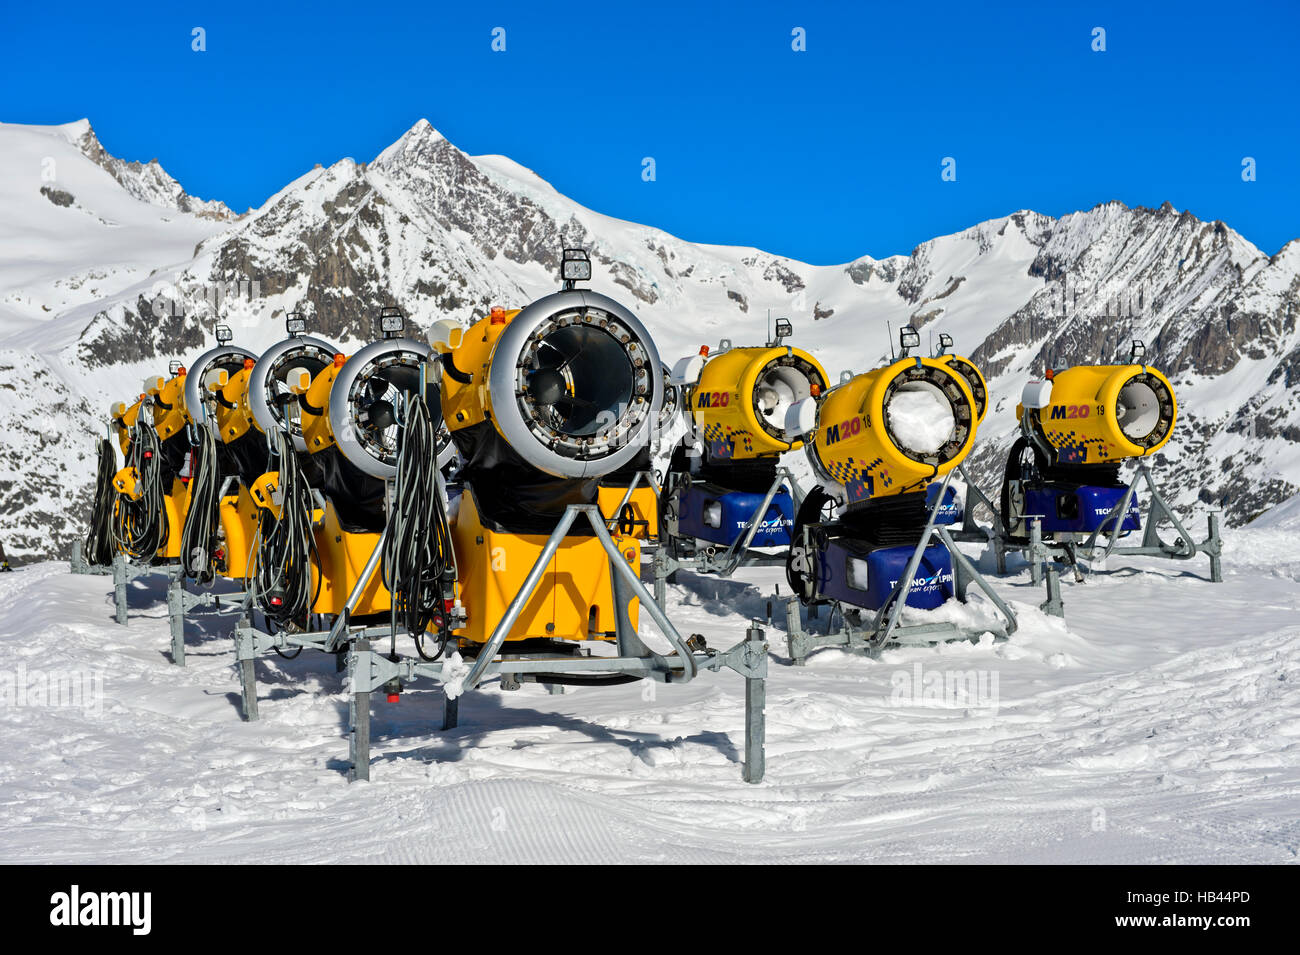 Batterie of TechnoAlpin snow cannons in the skiing area Aletscharena, Bettmeralp, Valais, Switzerland Stock Photo